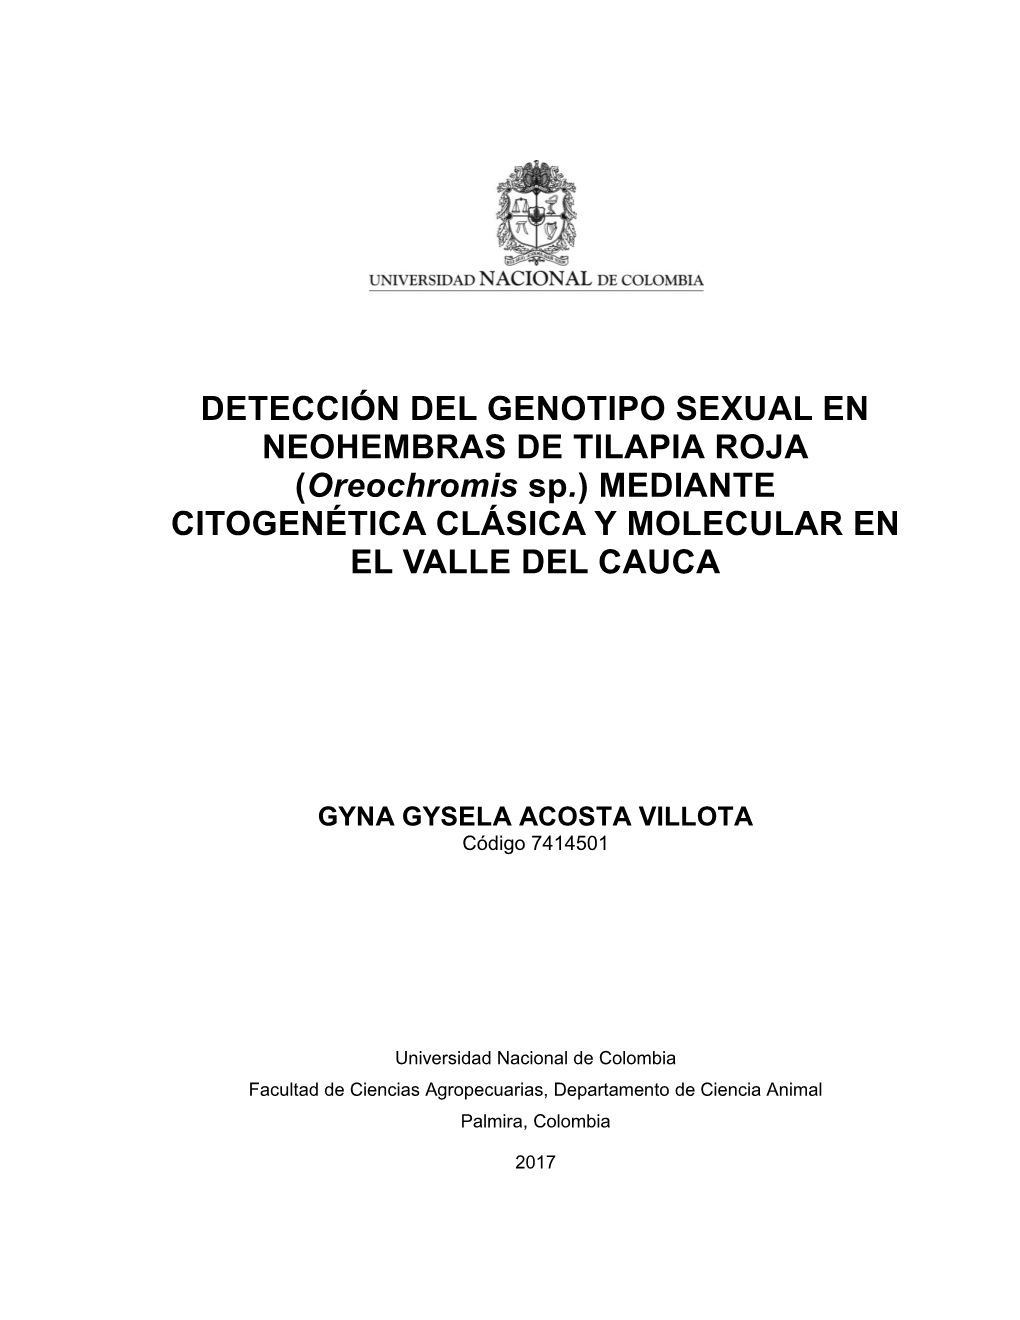 Oreochromis Sp.) MEDIANTE CITOGENÉTICA CLÁSICA Y MOLECULAR EN EL VALLE DEL CAUCA